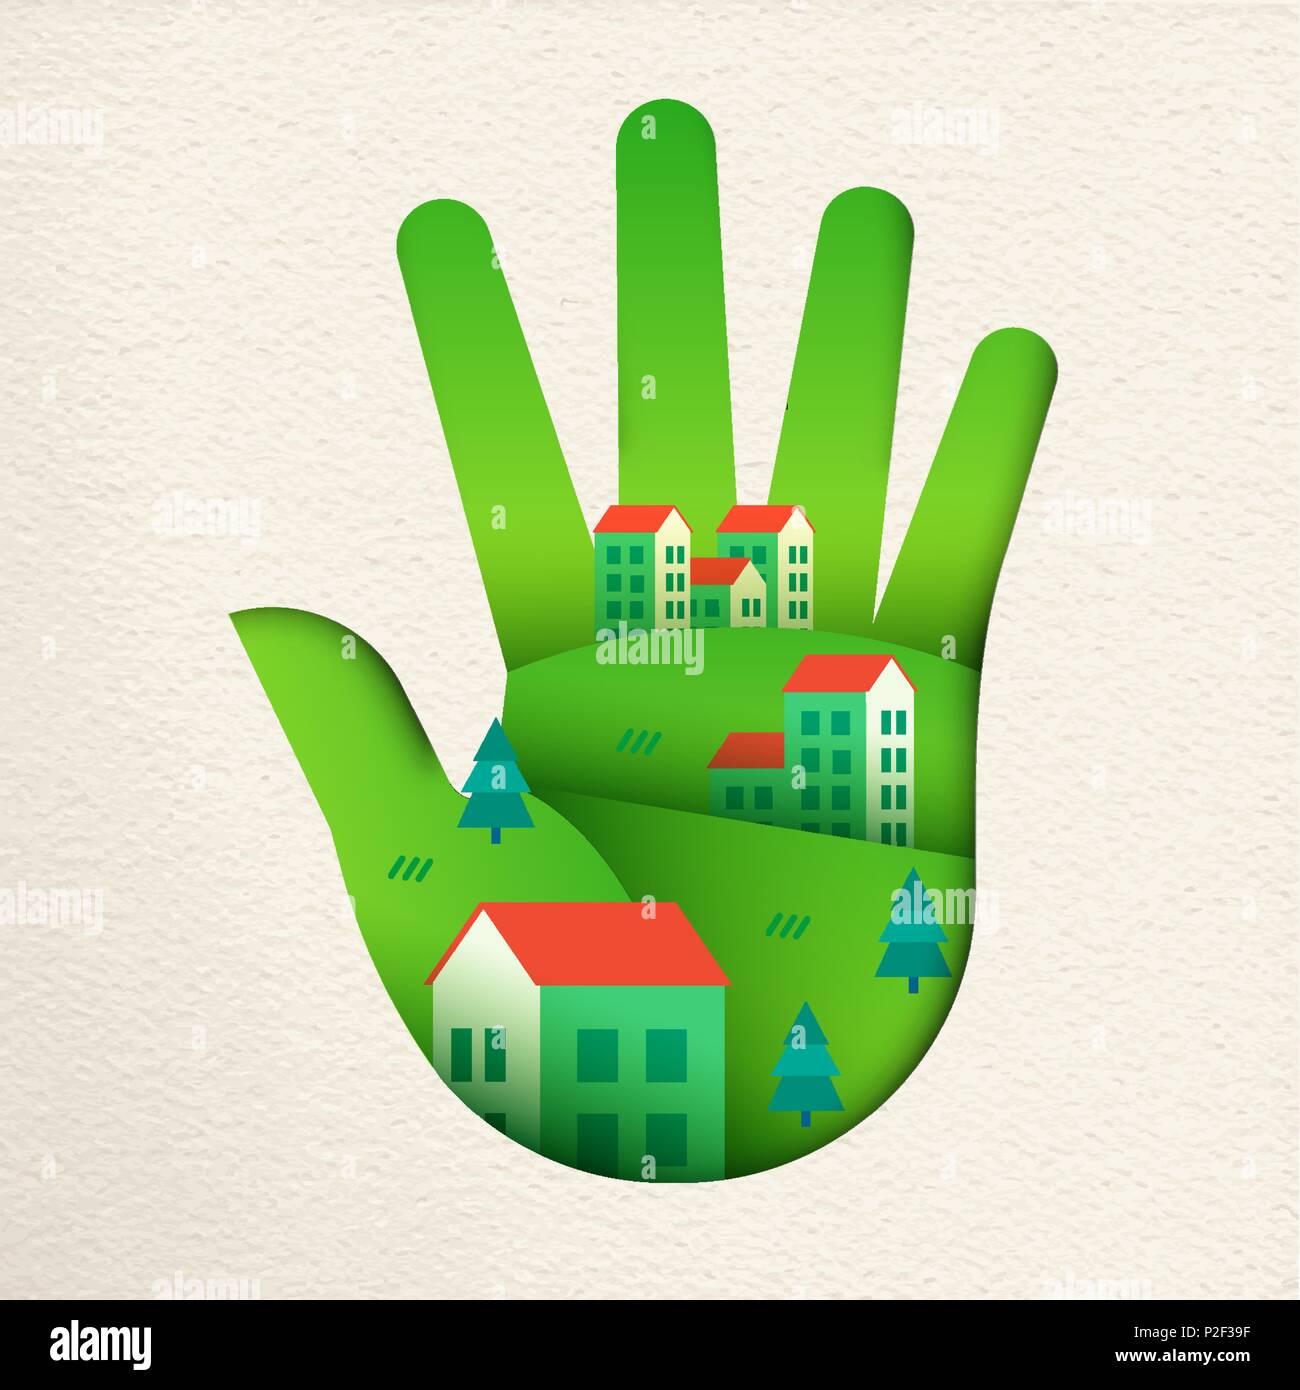 Grün die menschliche Hand in Papier geschnitten Art Style mit eco-freundliche Stadt Landschaft. Smart Home Dorf Konzept für Umweltschutz oder nachhaltige Gemeinschaft. EP Stock Vektor